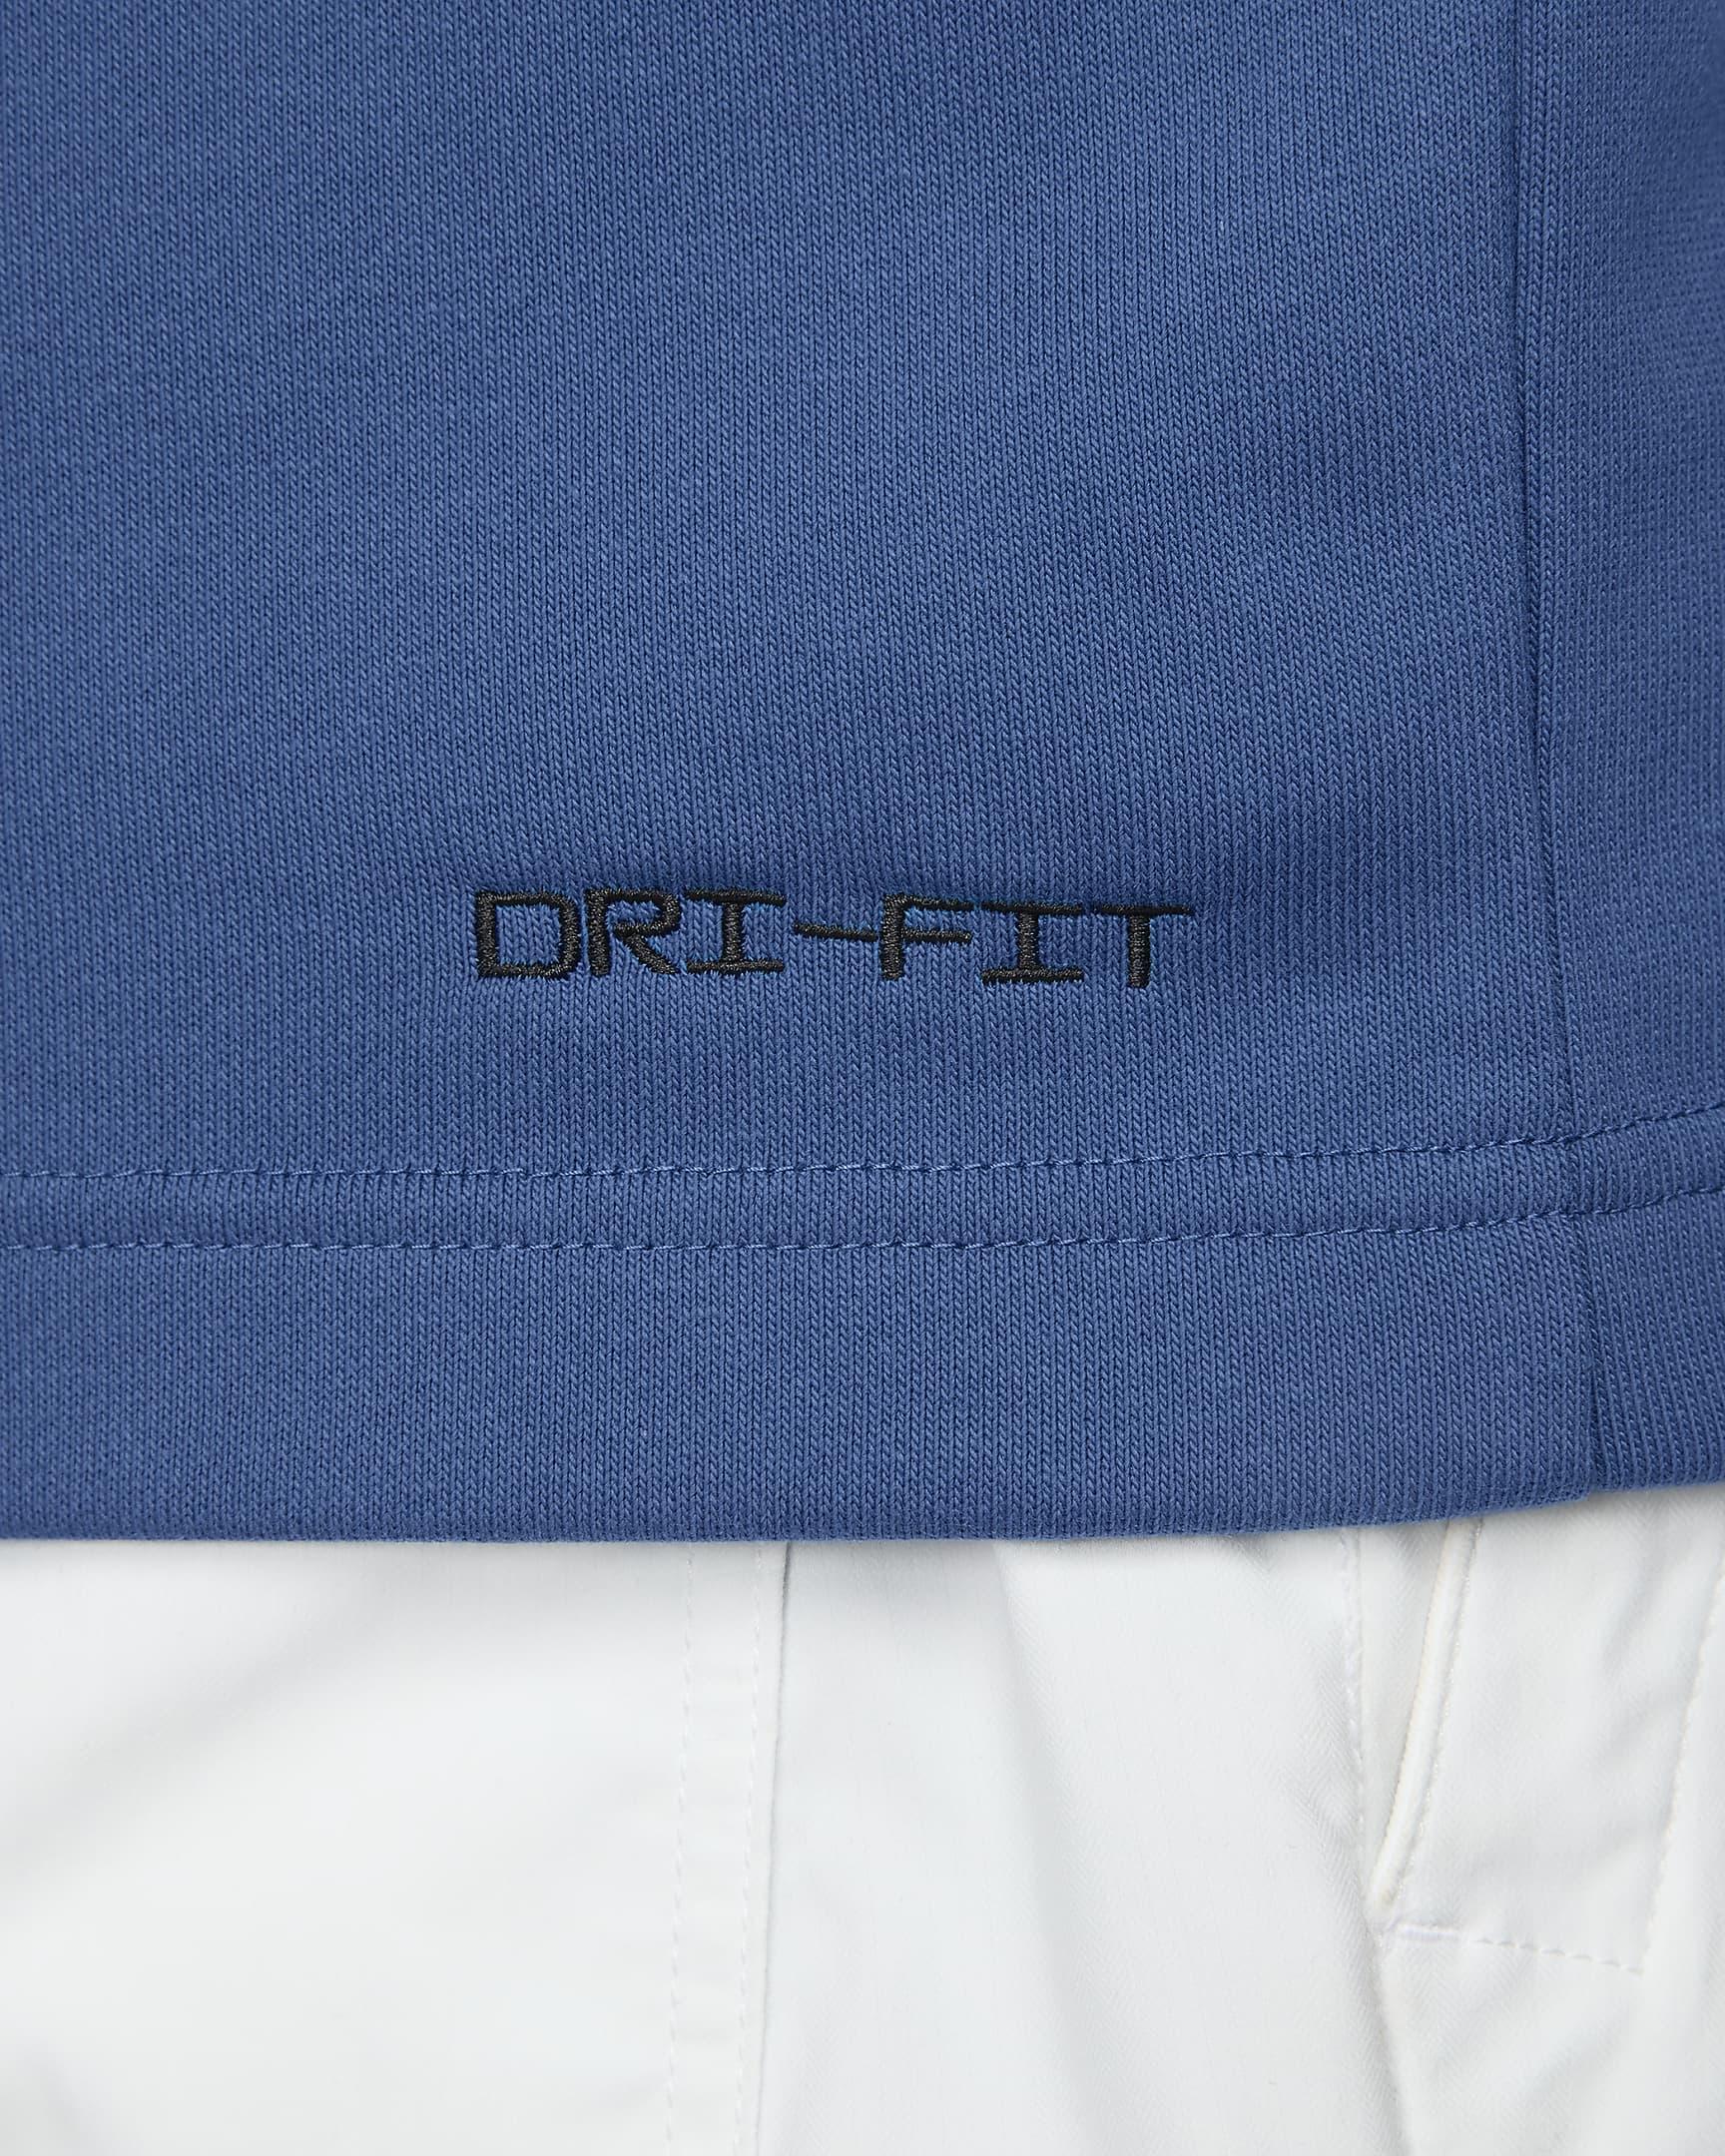 Nike Dri-FIT Standard Issue Men's Golf Cardigan. Nike AT